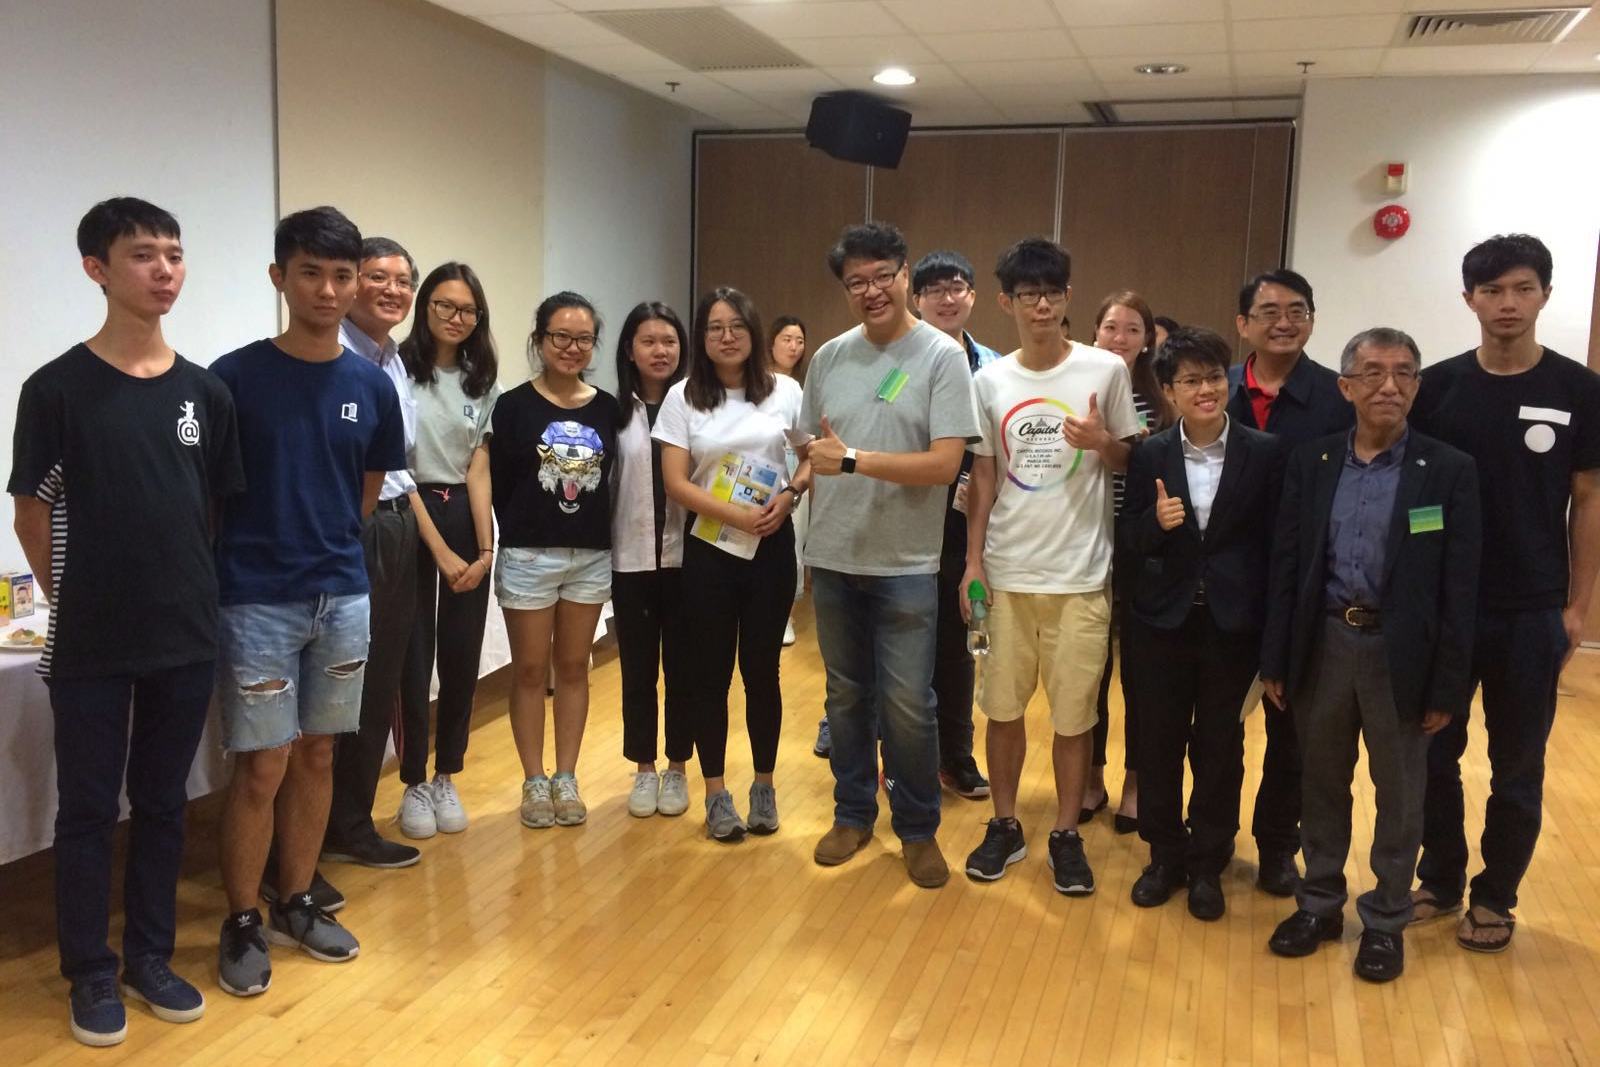 香港資訊科技商會會長黃岳永先生，邀請國際學院師生參觀旗下Virtual Reality技術研發實驗室，商討創業培訓計畫（Entrepreneurship Training Programme）合作事宜。